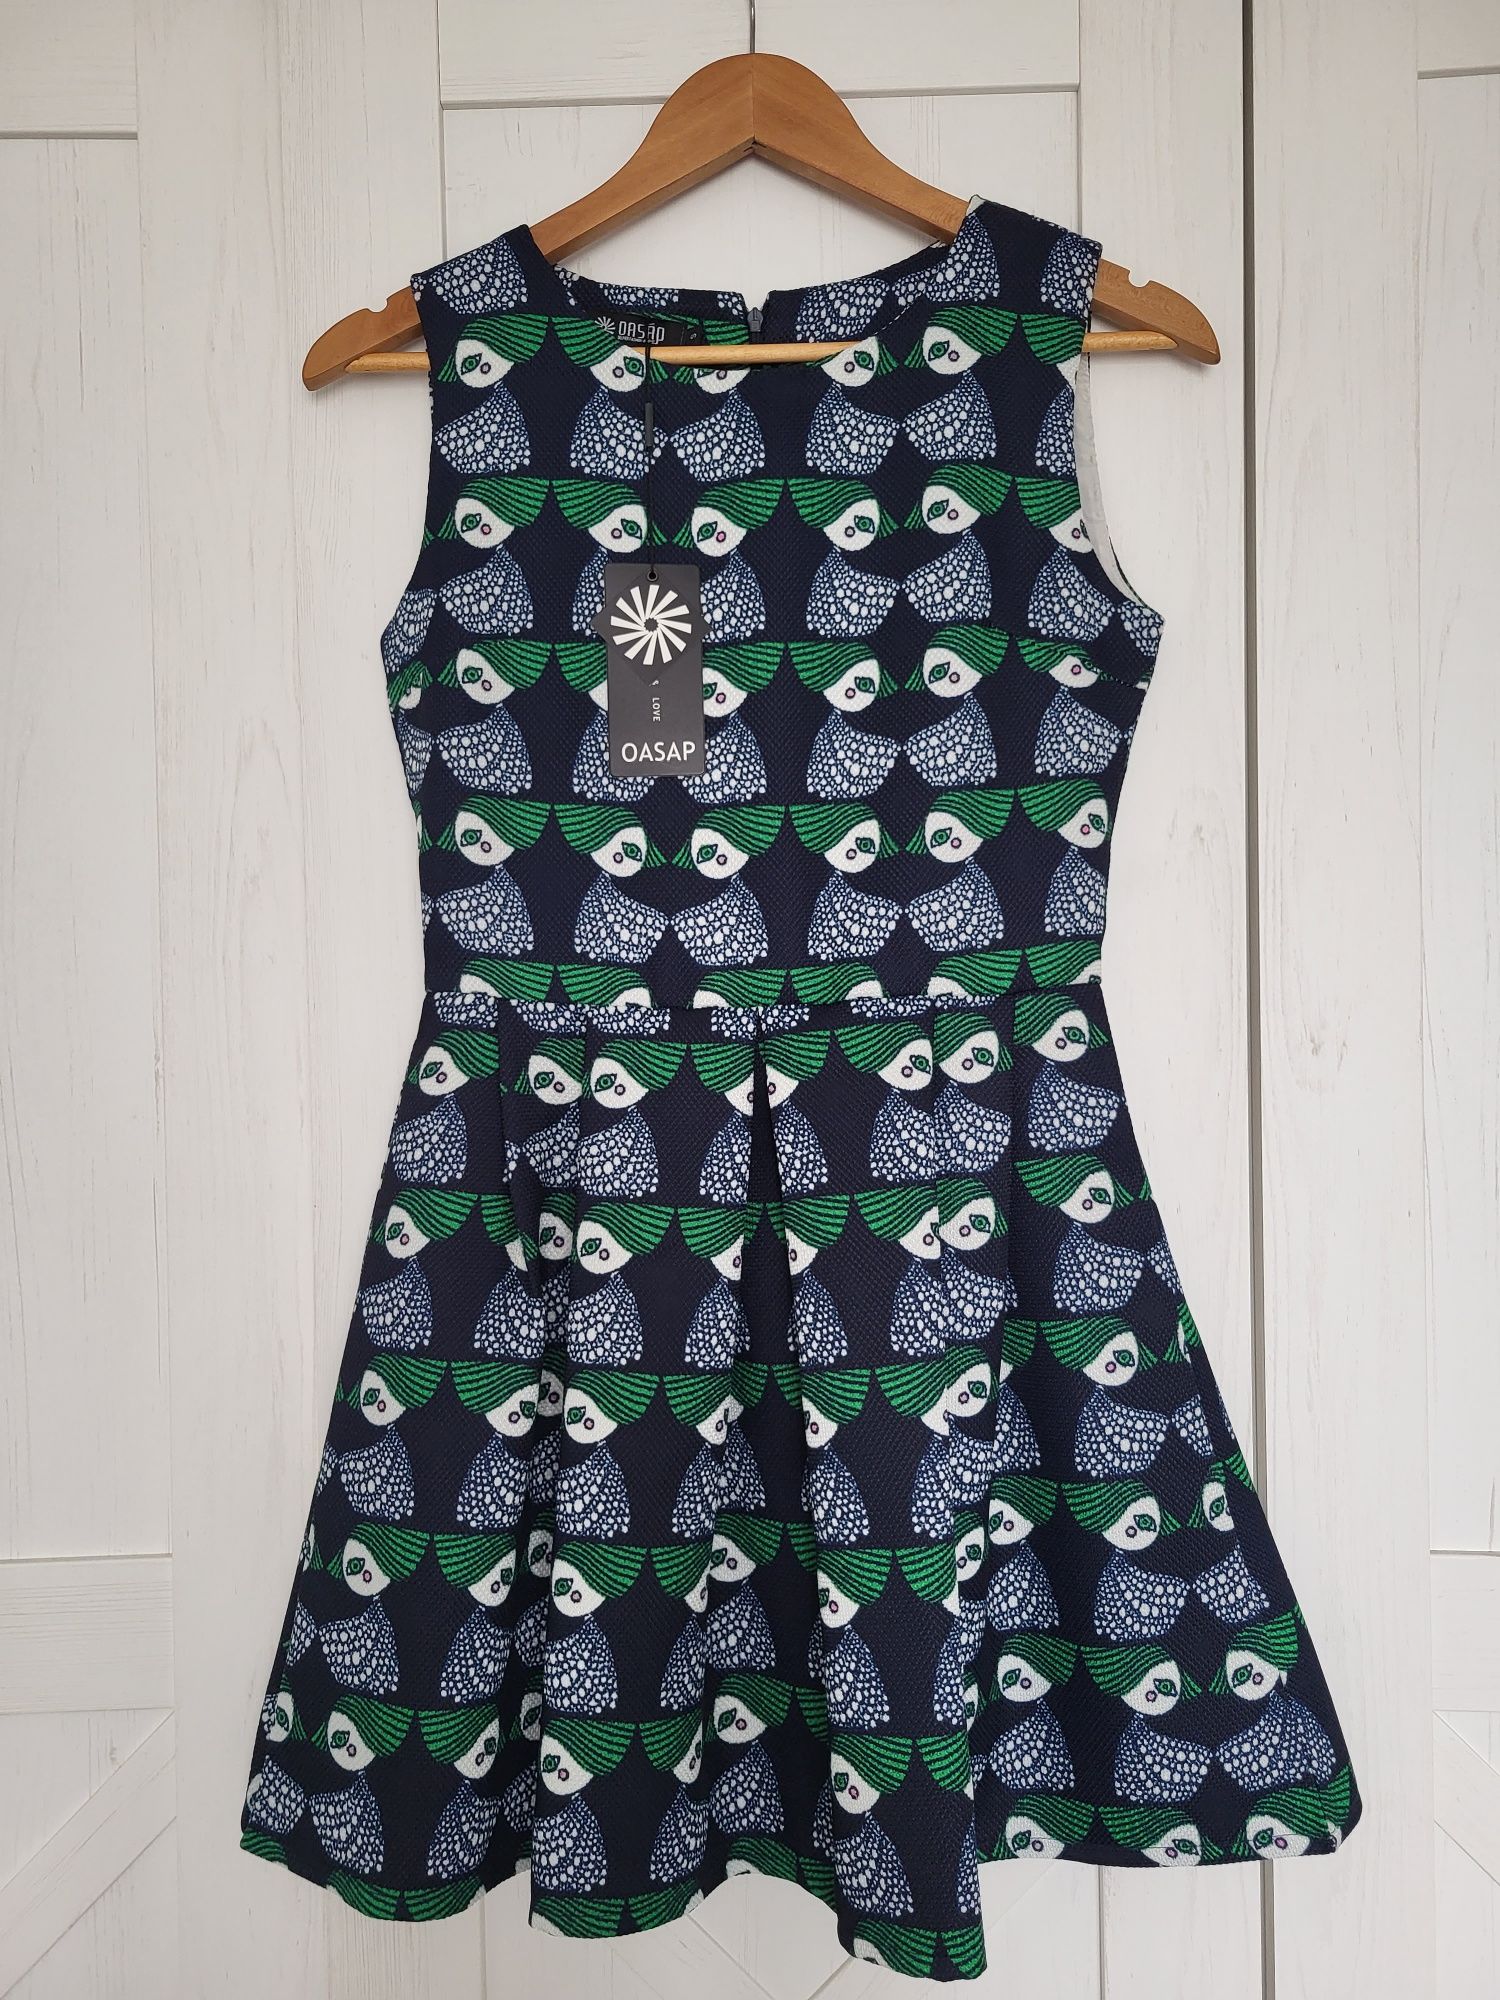 Retro sukienka gruby materiał zara mango vintage granatowa wzór